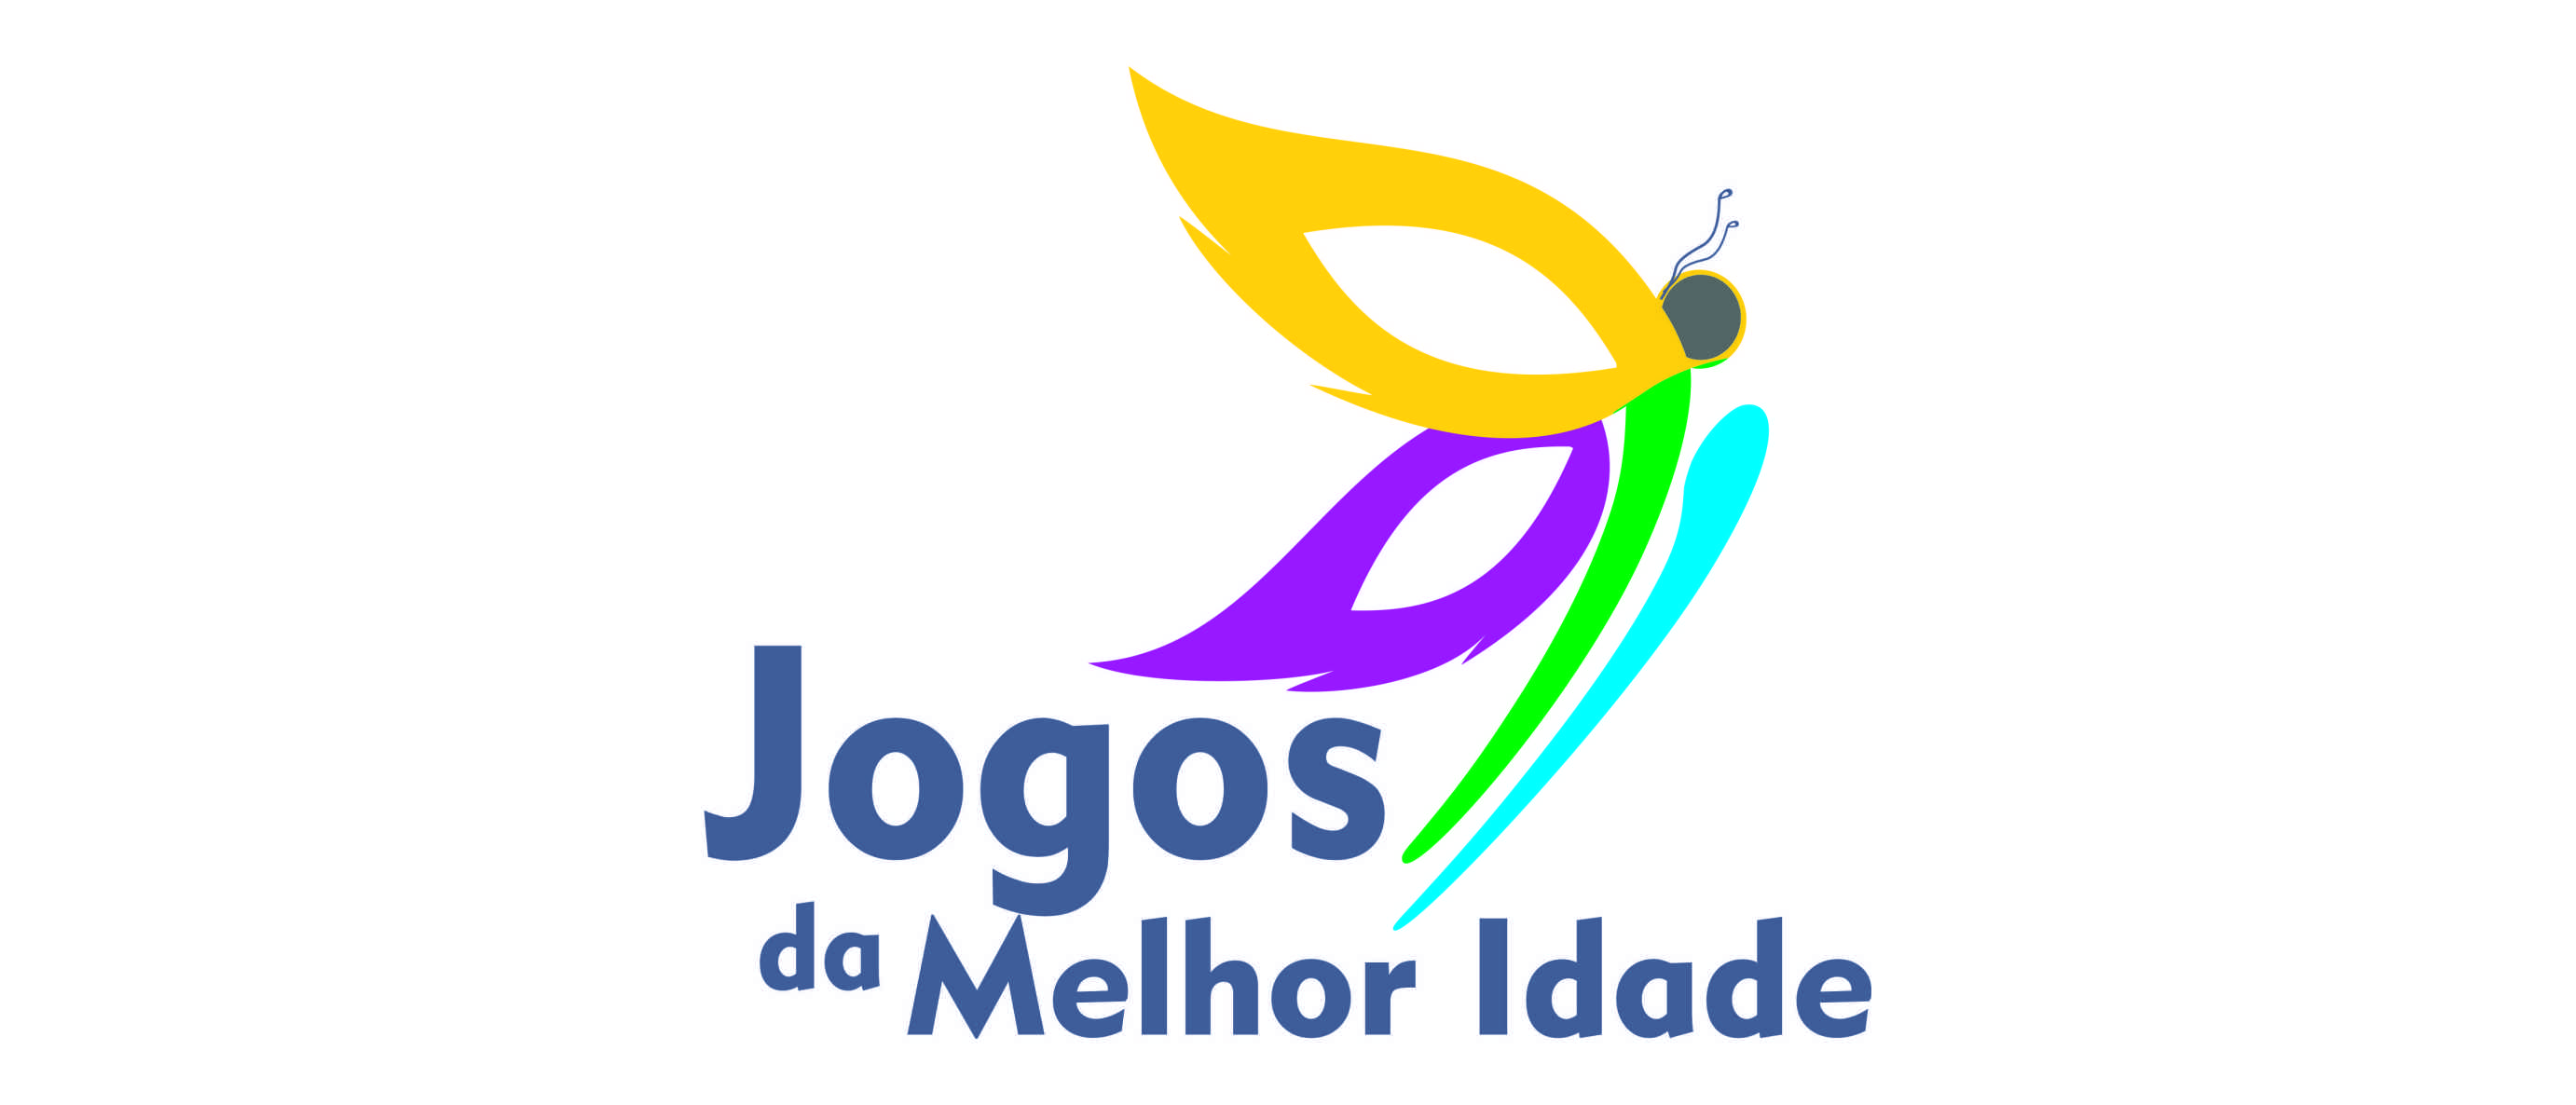 JOGOS DA MELHOR IDADE – FUNDESPORTE